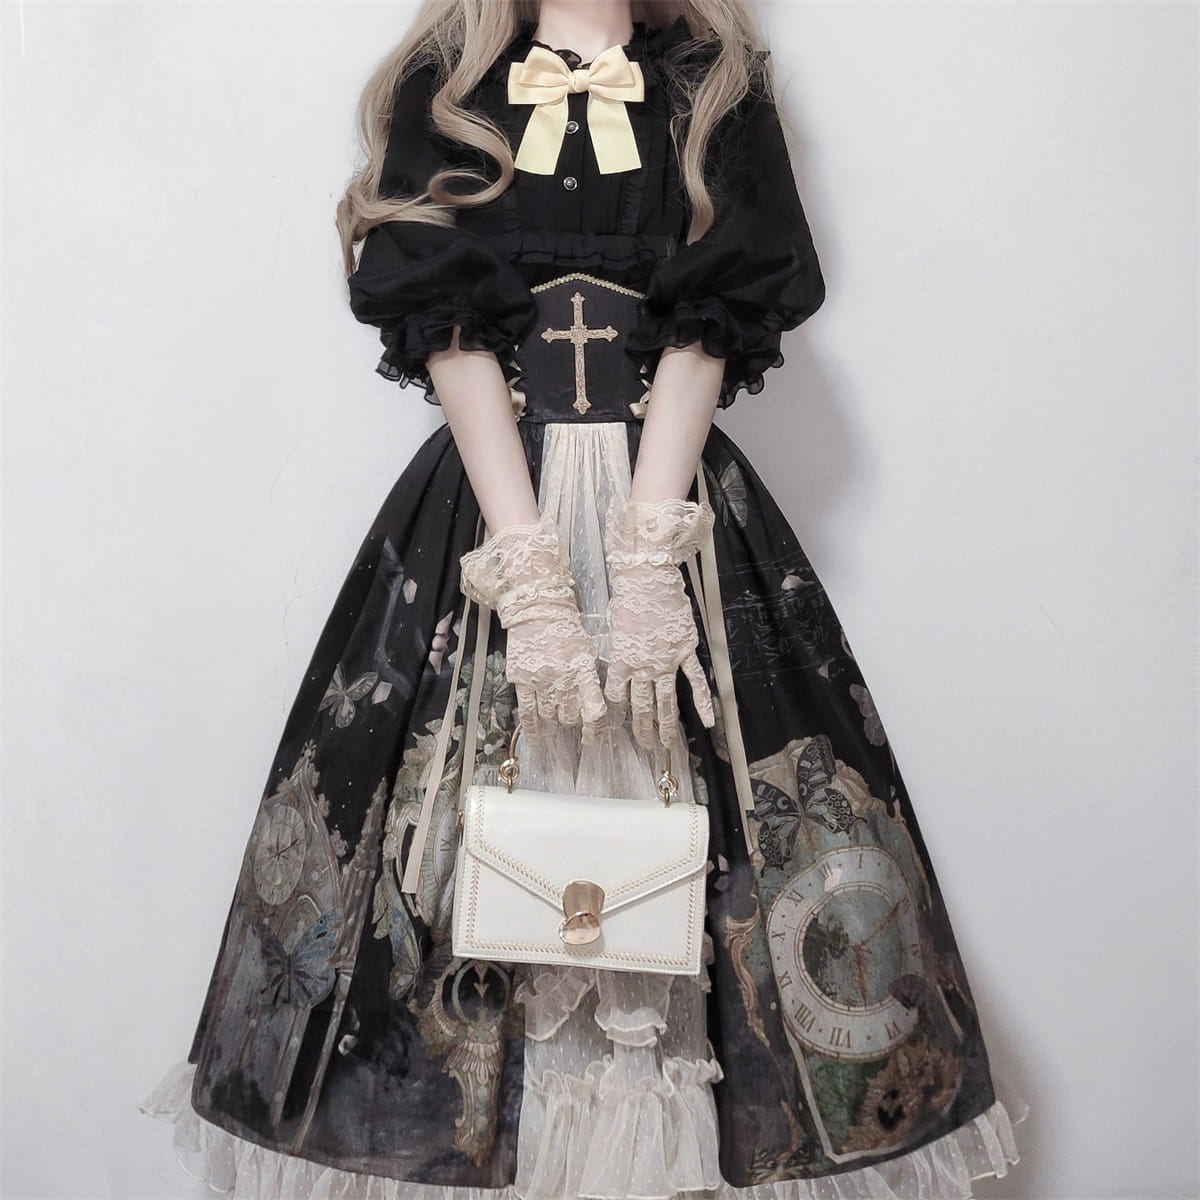 Lolita punk goth dress LS0301